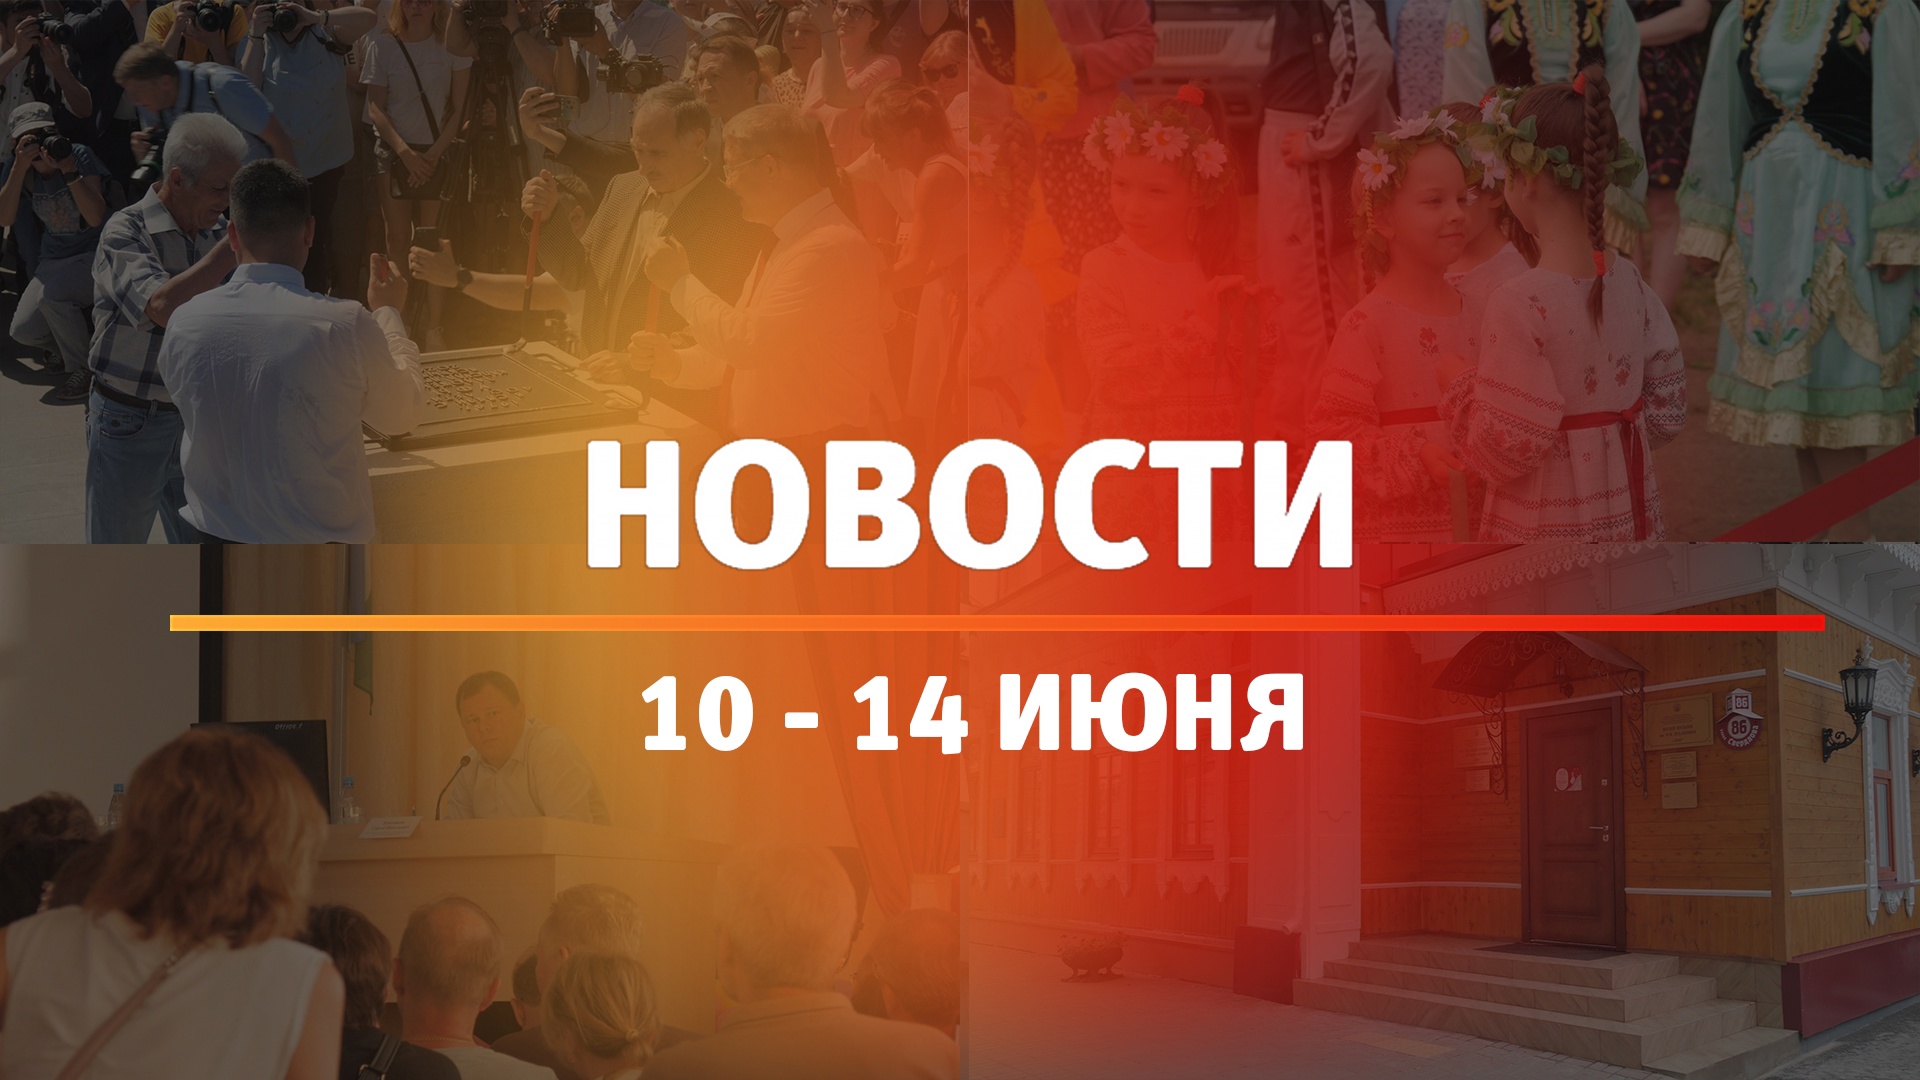 Итоги Новости Уфы и Башкирии | Главное за неделю с 10 по 14 июня